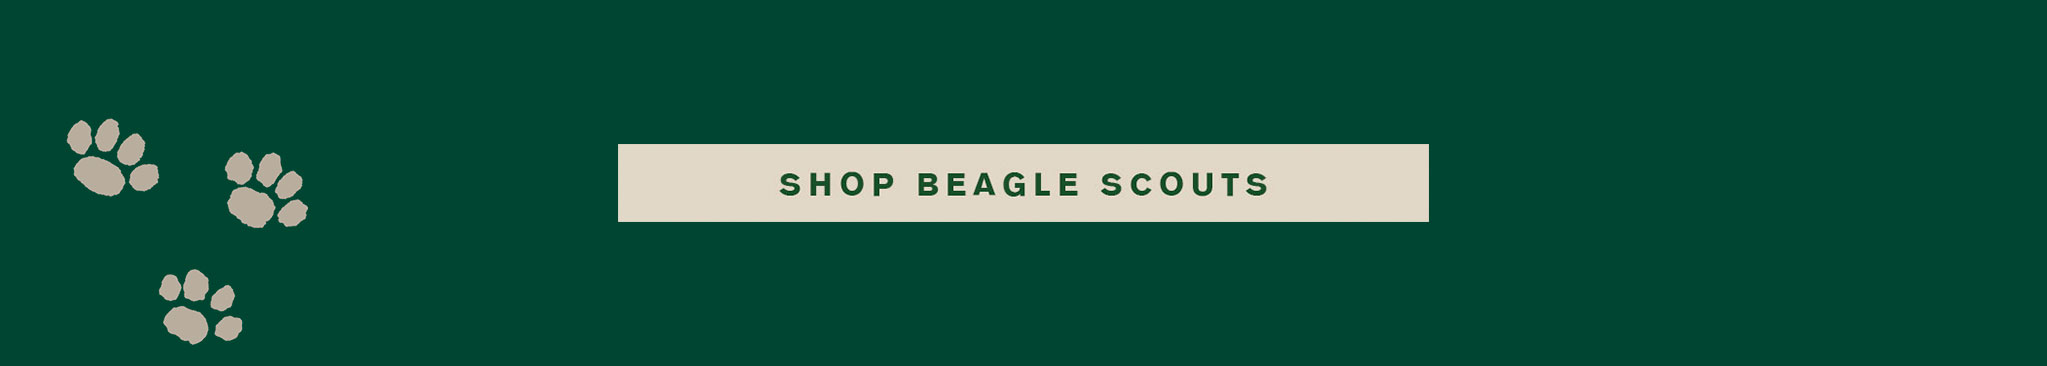 Shop Beagle Scouts